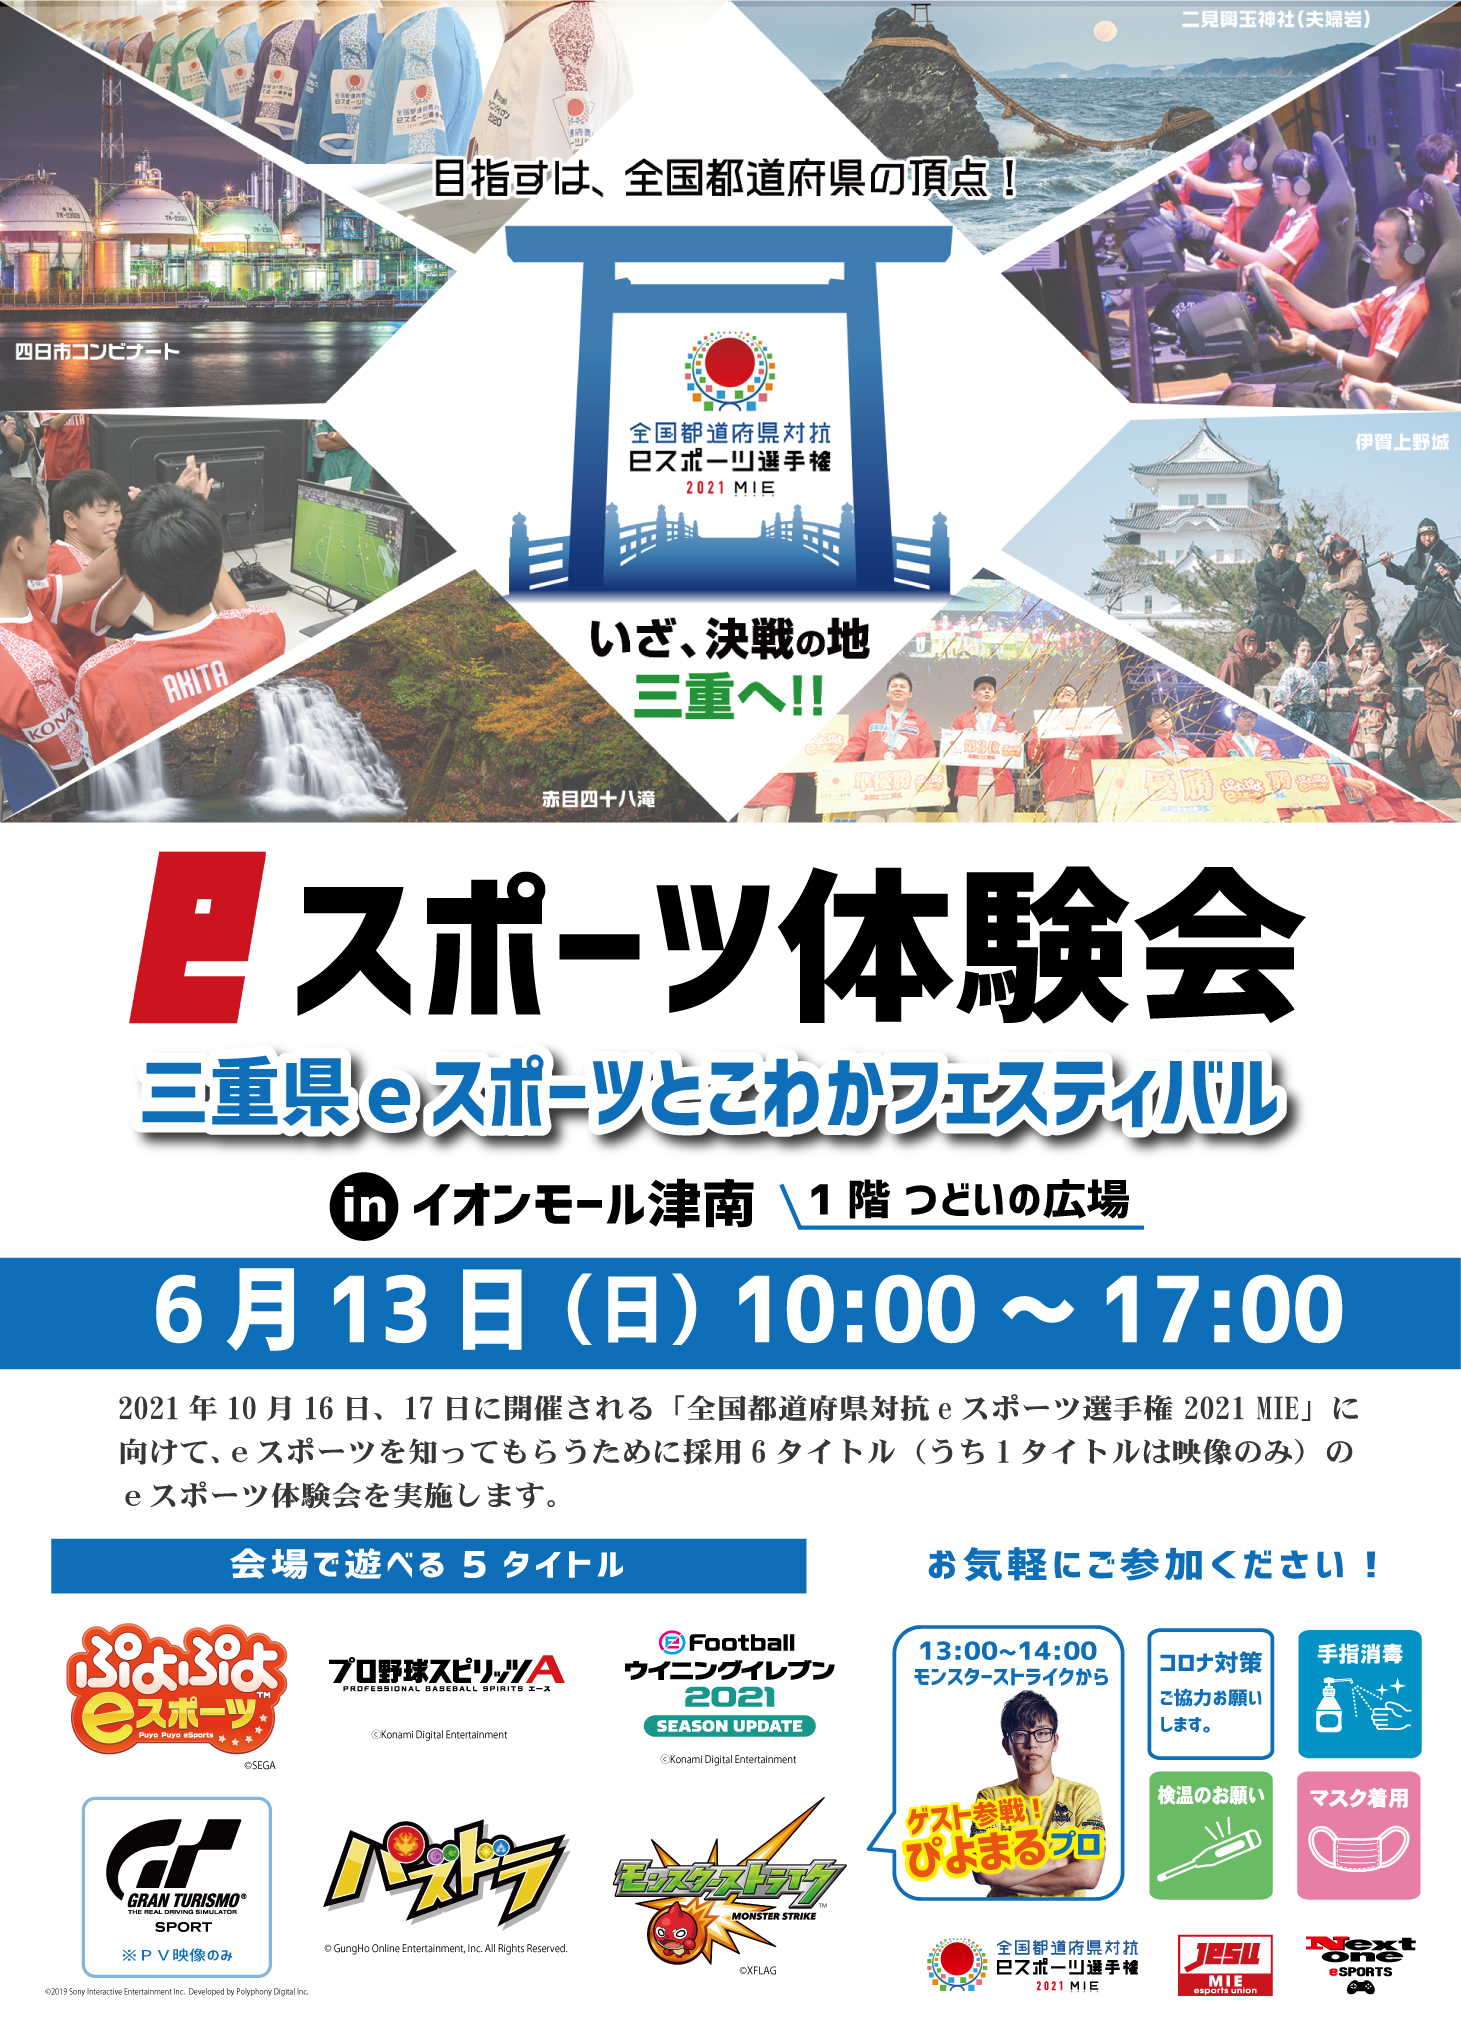 三重県eスポーツとこわかフェスティバル